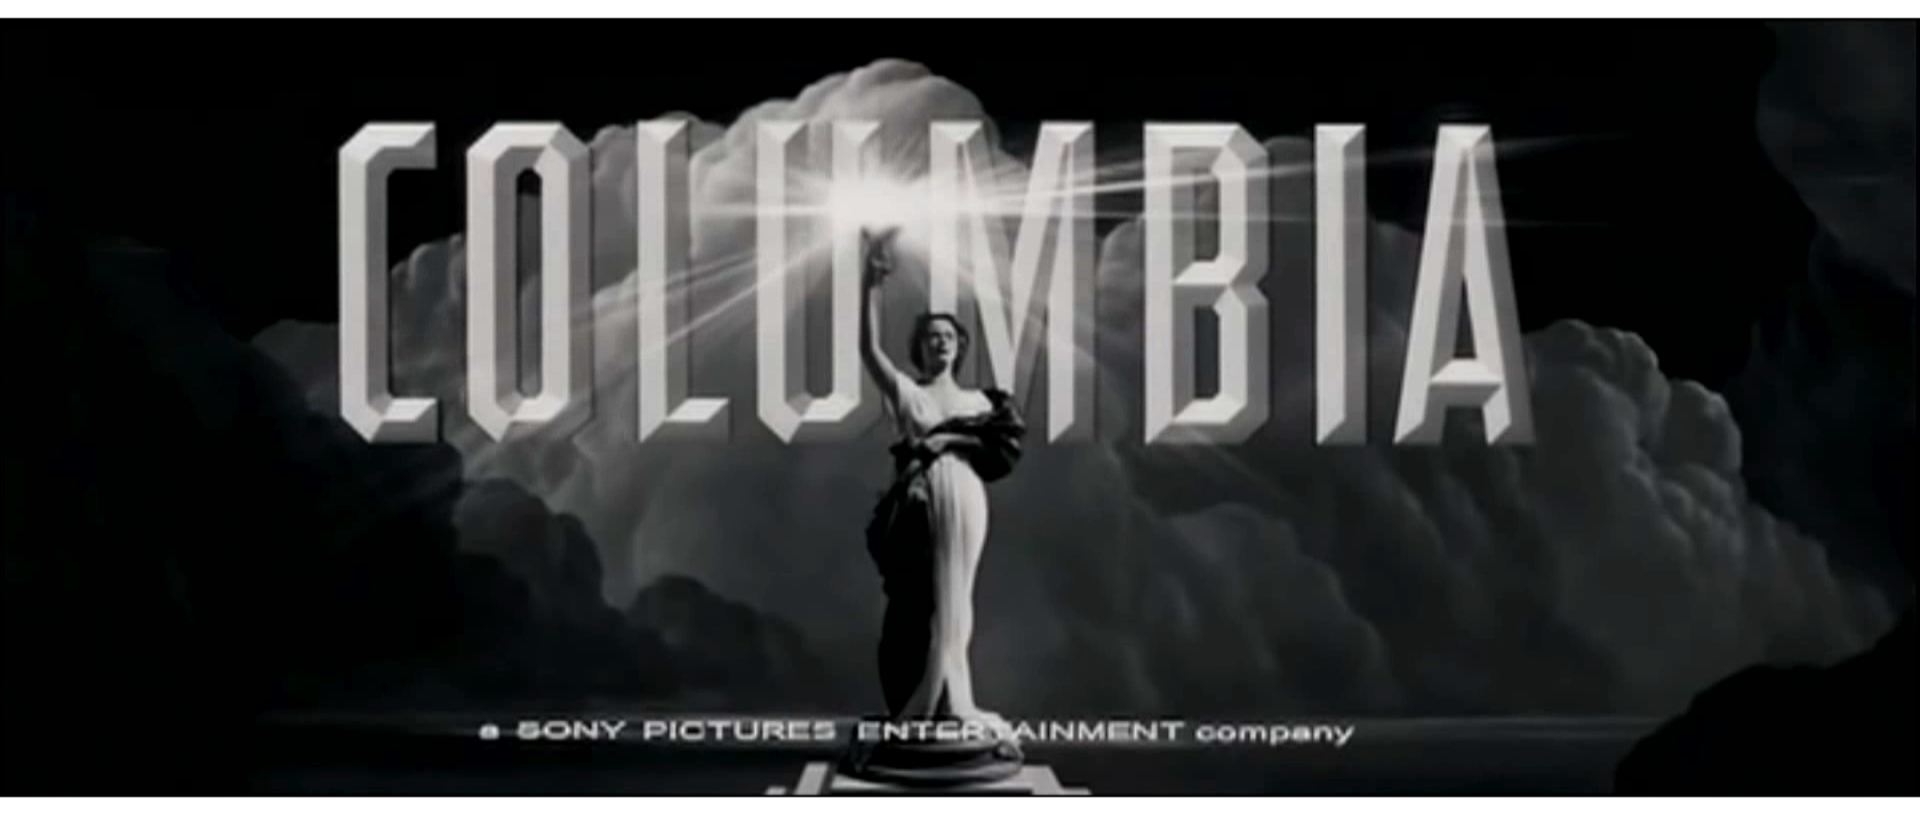 Кинокомпания пикчерз. Логотип кинокомпании Columbia. Коламбия Пикчерз.